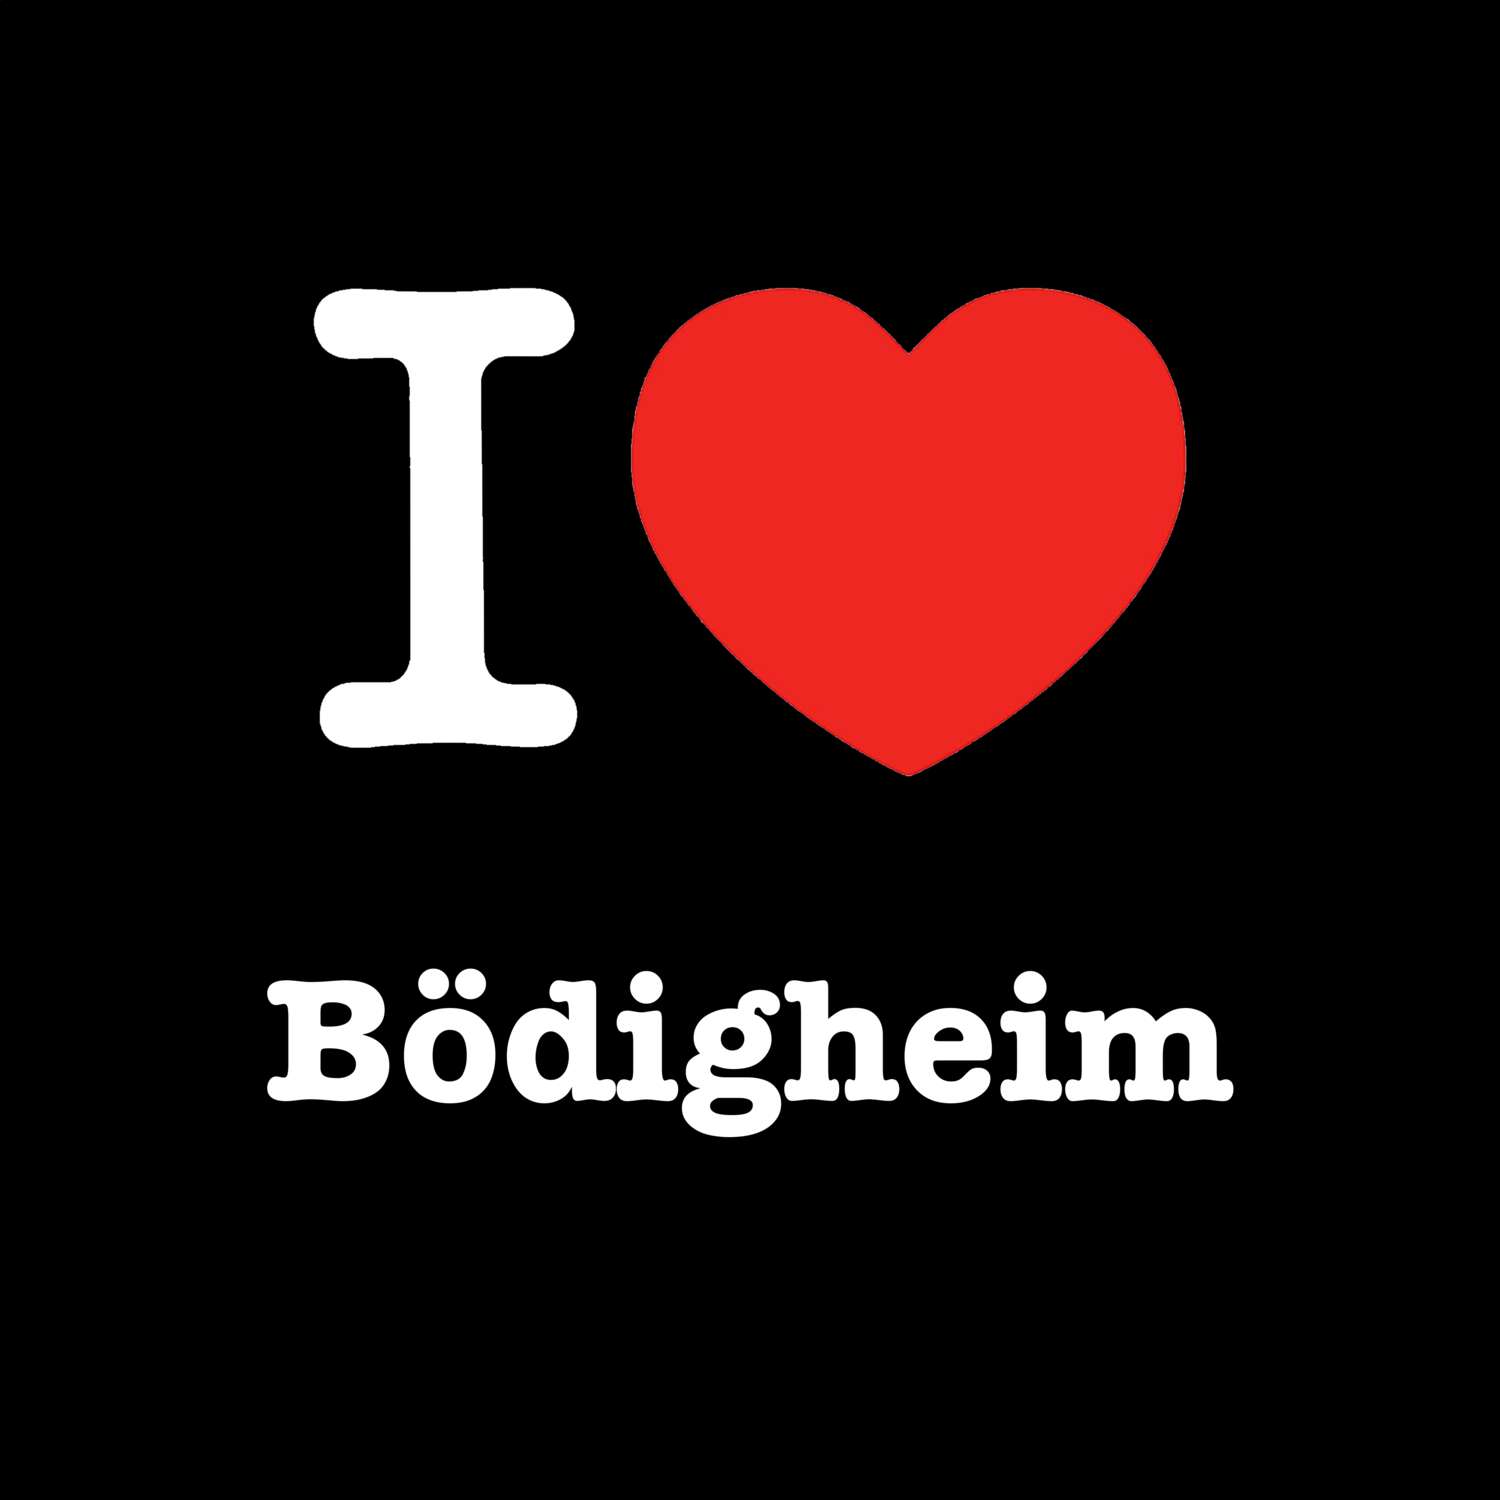 Bödigheim T-Shirt »I love«